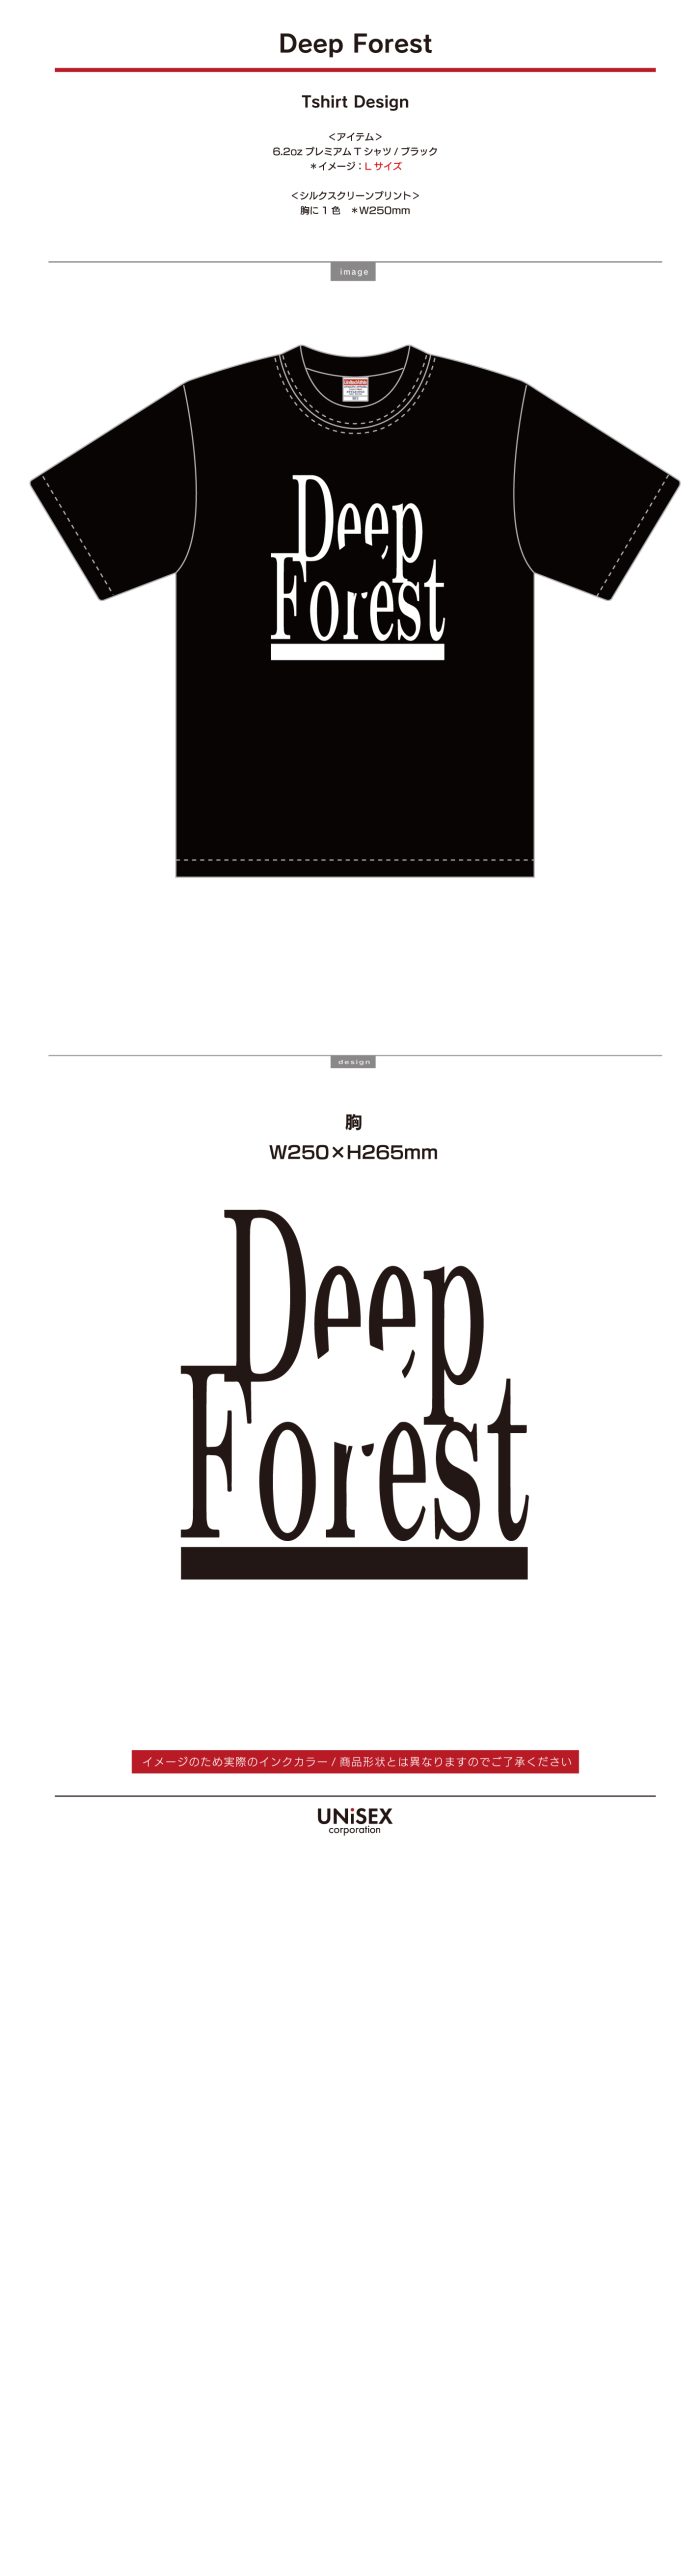 deepforest